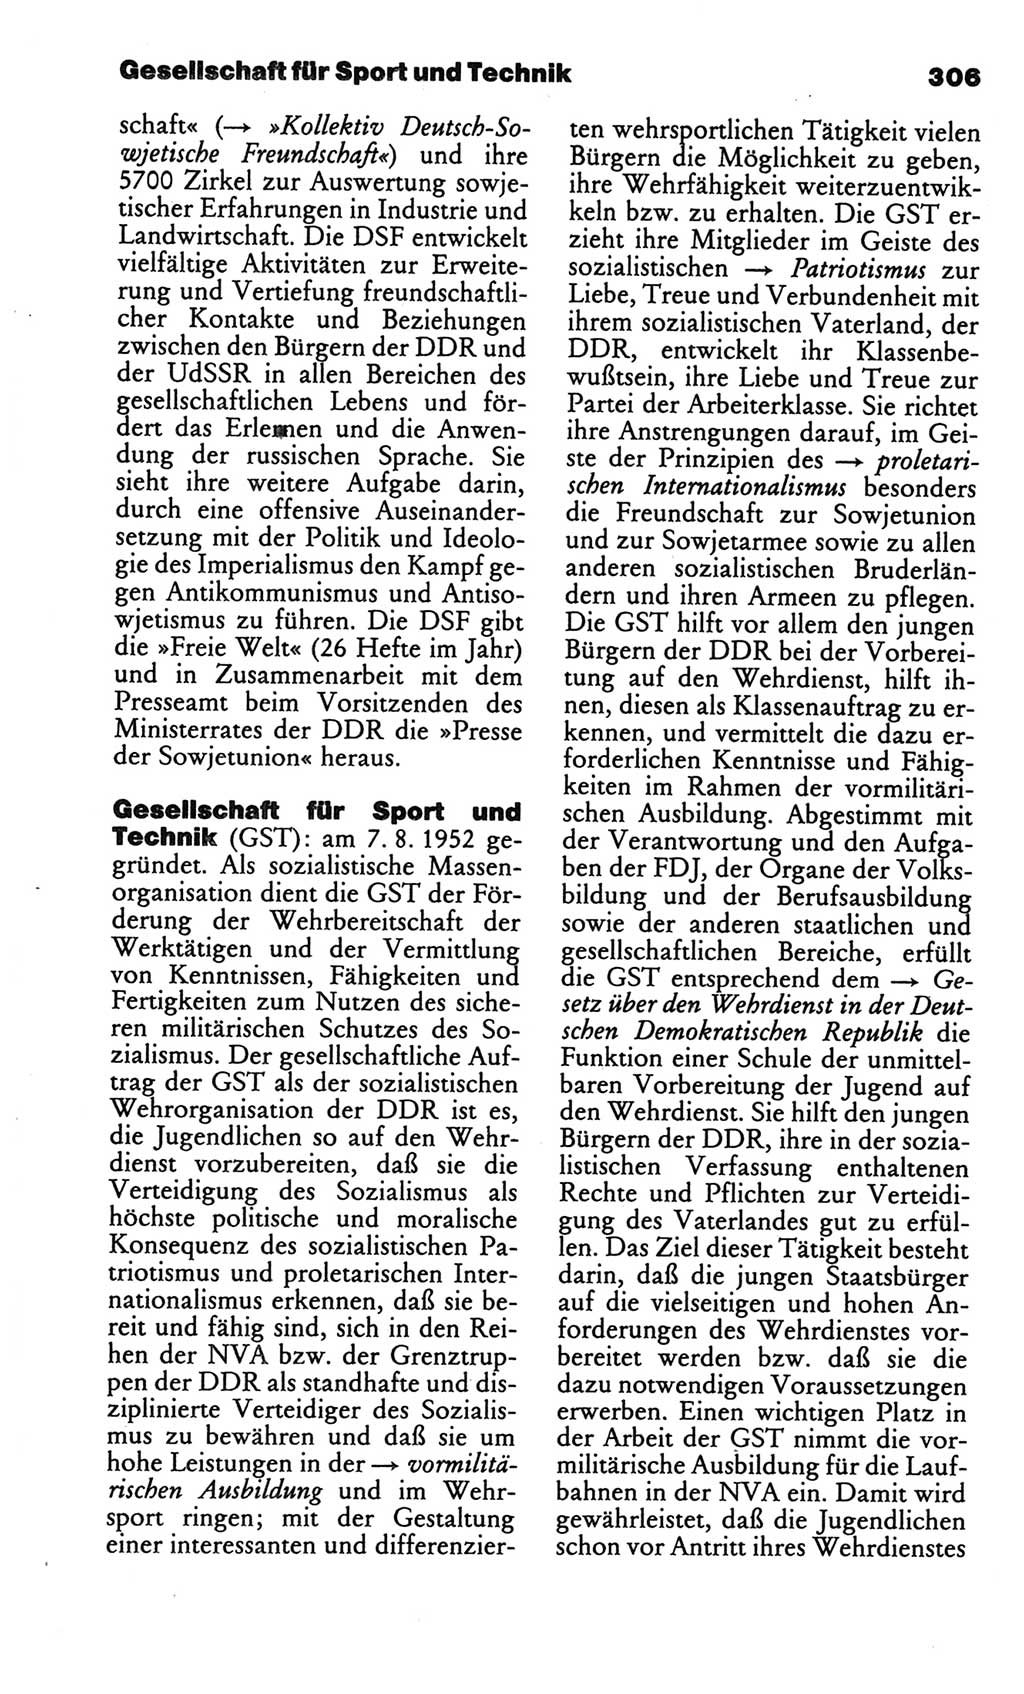 Kleines politisches Wörterbuch [Deutsche Demokratische Republik (DDR)] 1986, Seite 306 (Kl. pol. Wb. DDR 1986, S. 306)